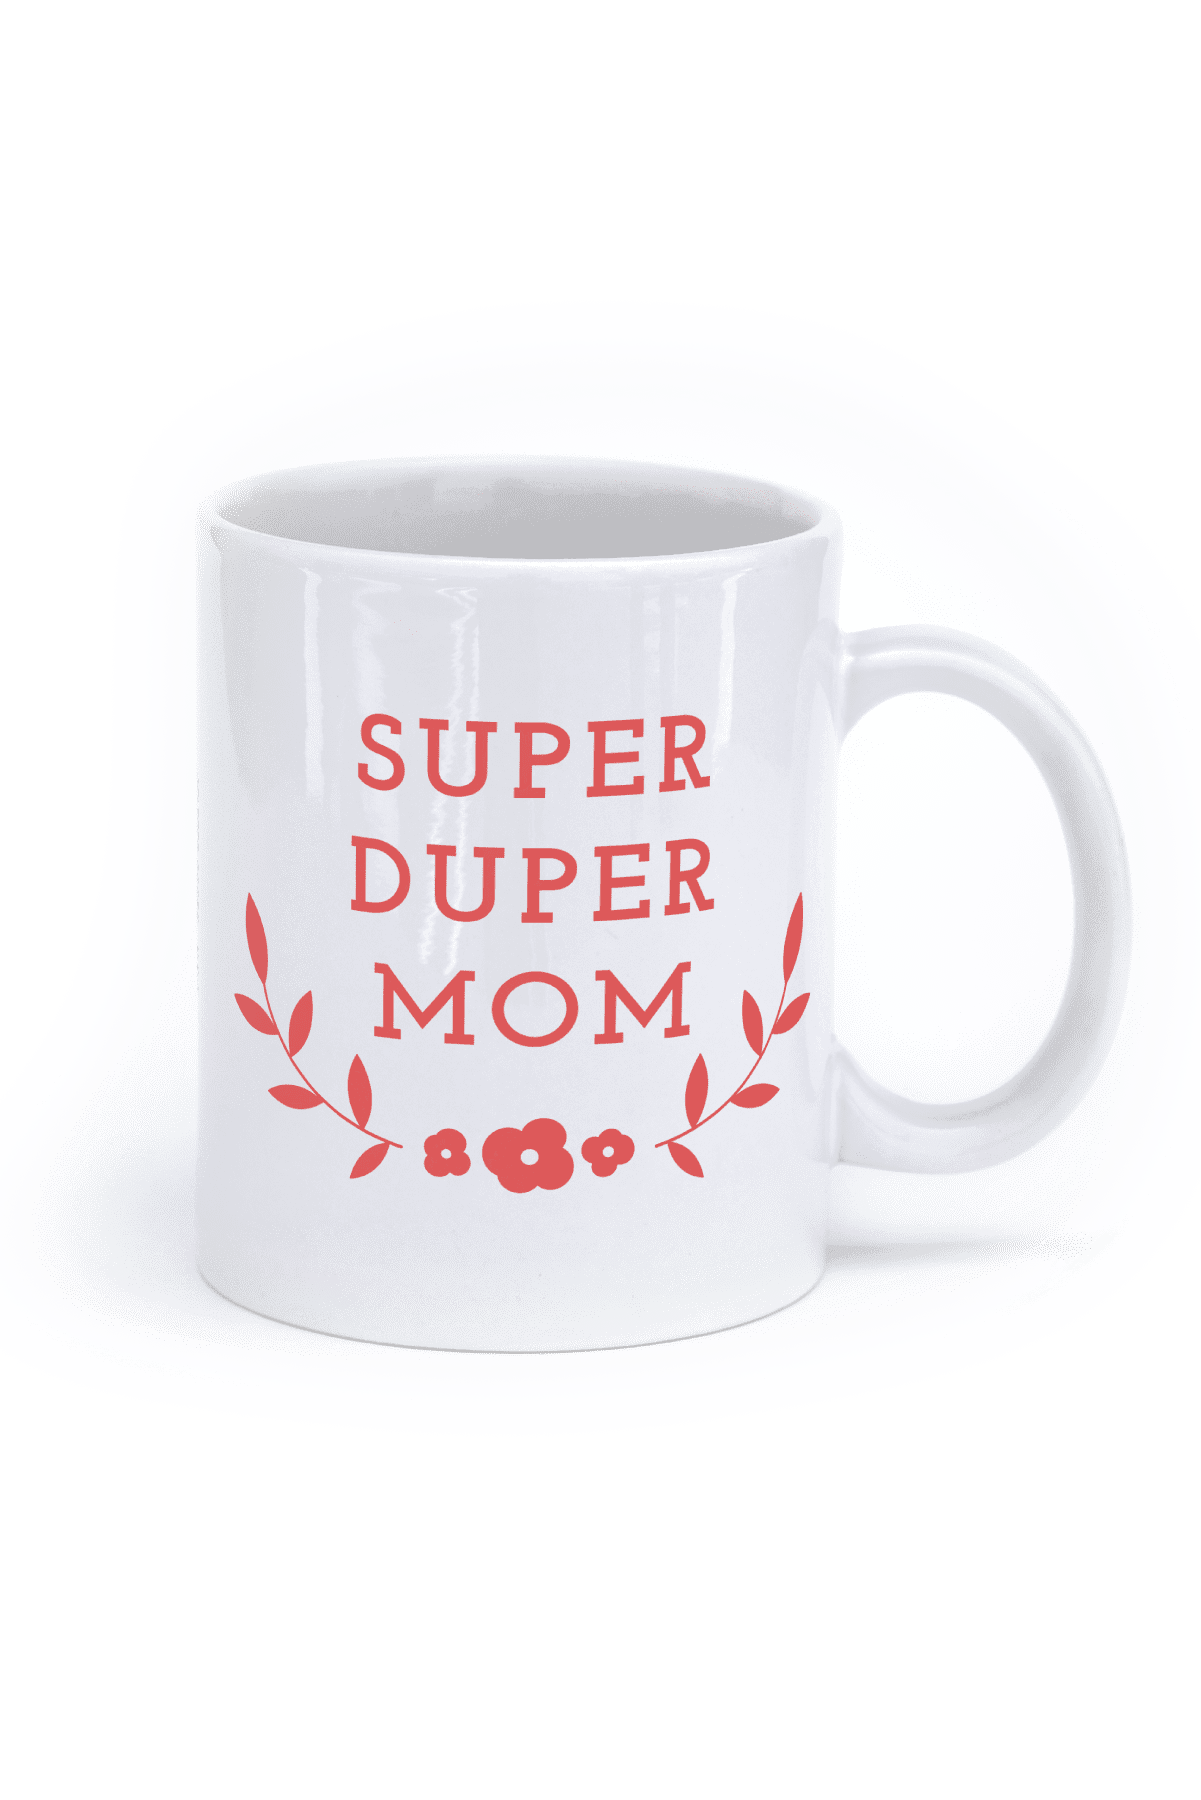 super mom mug